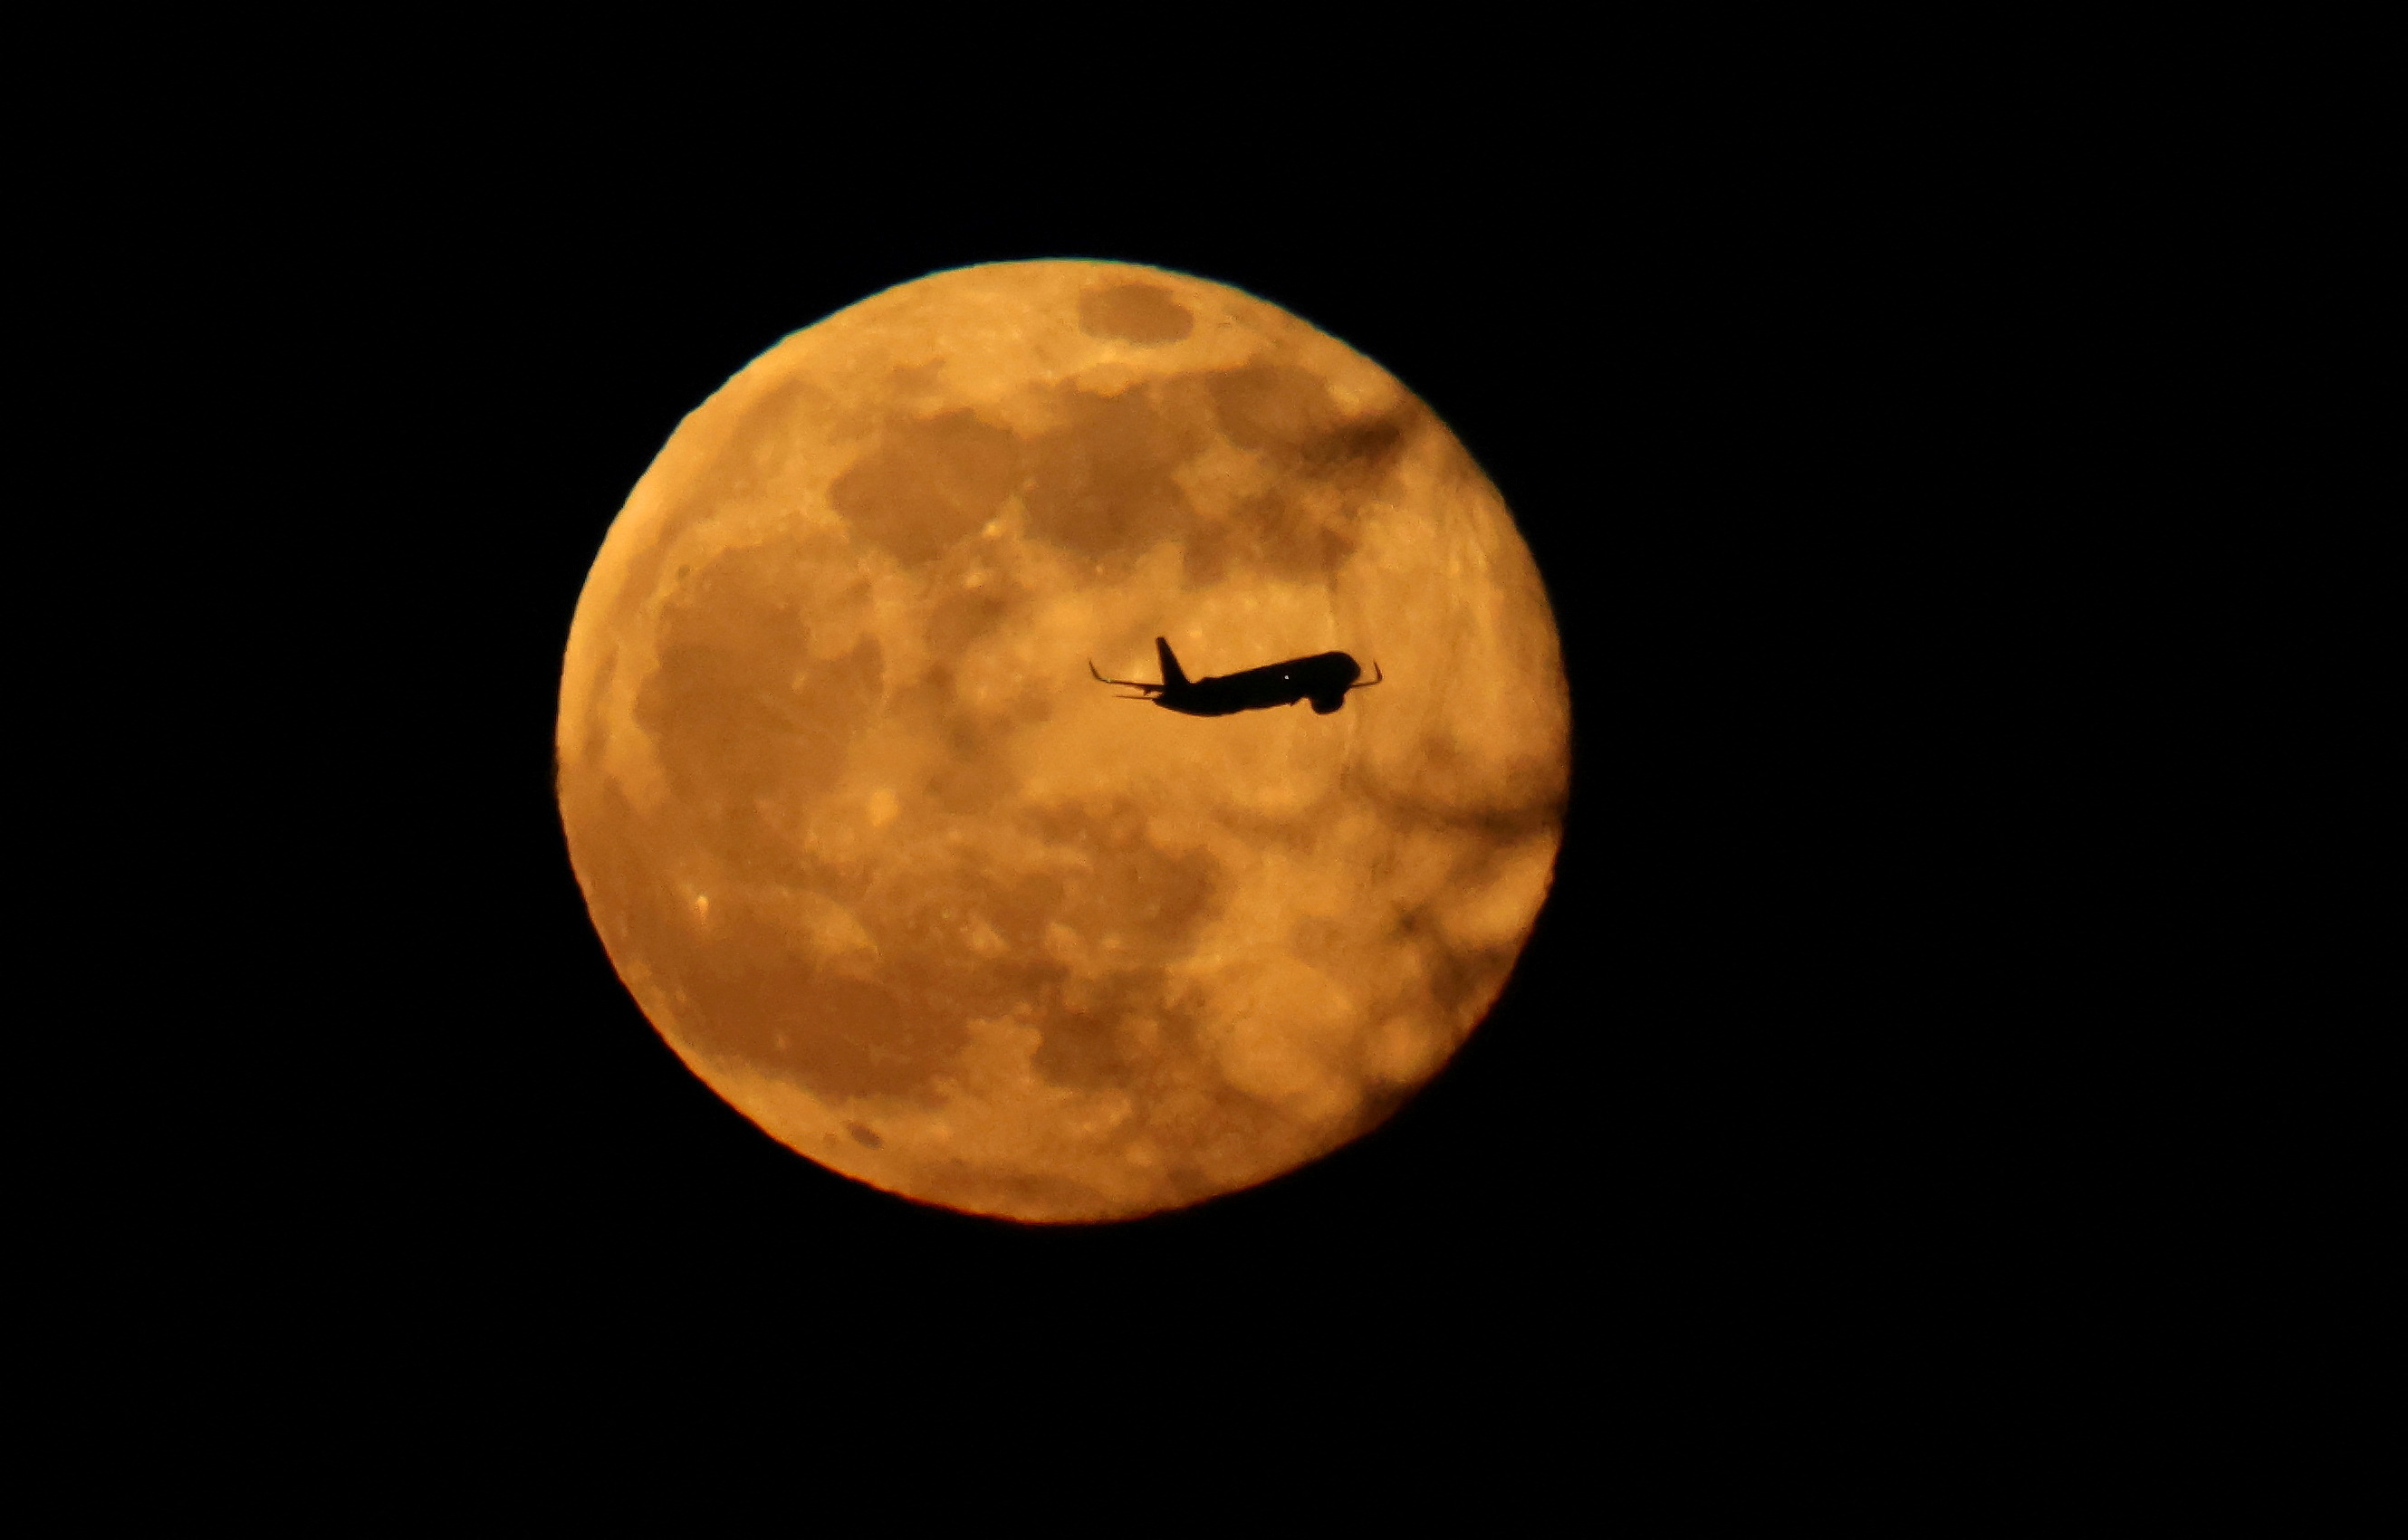 Plane flies in front of moon.